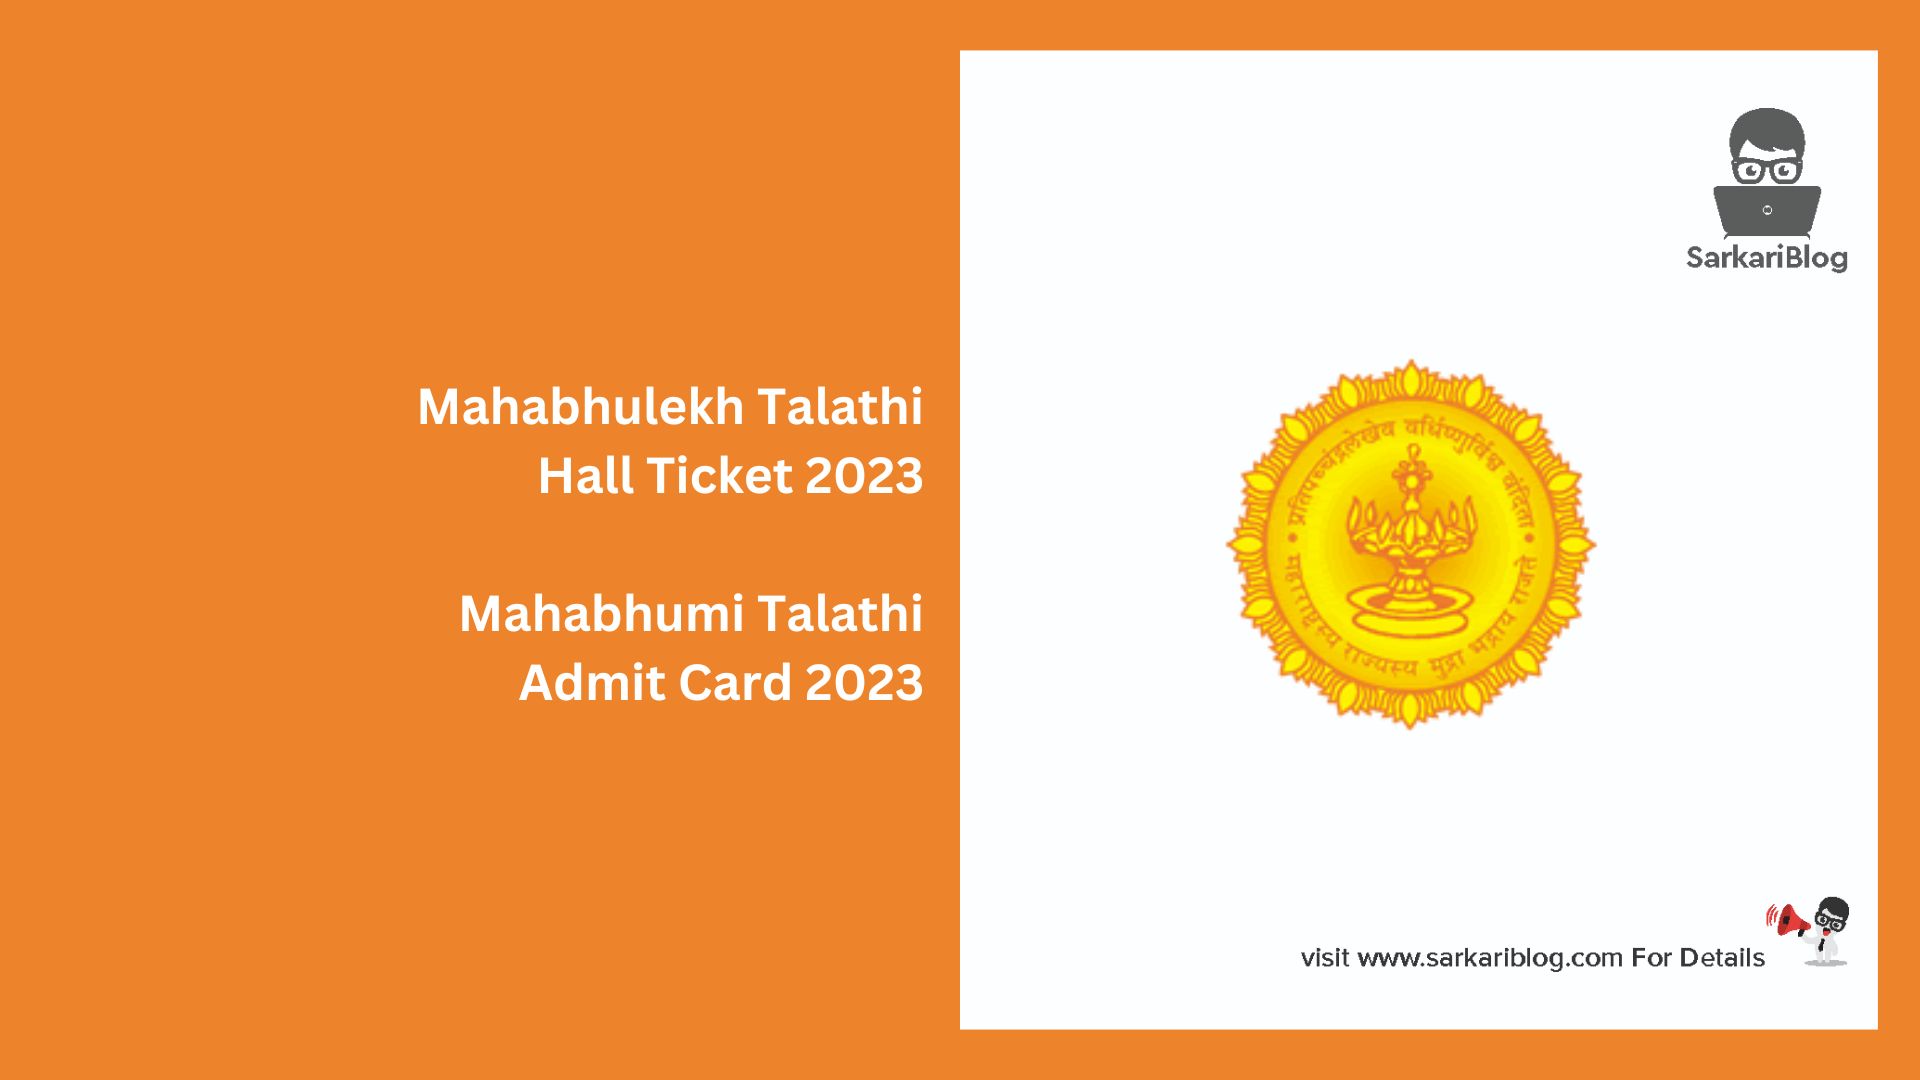 Mahabhulekh Talathi Hall Ticket 2023